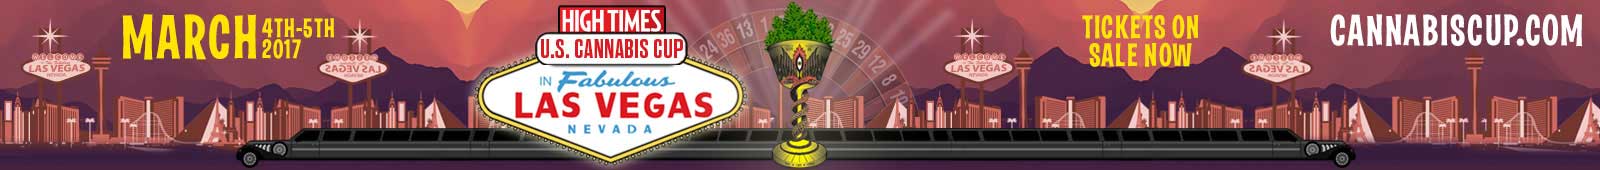 High Times Cannabis Cup Las Vegas